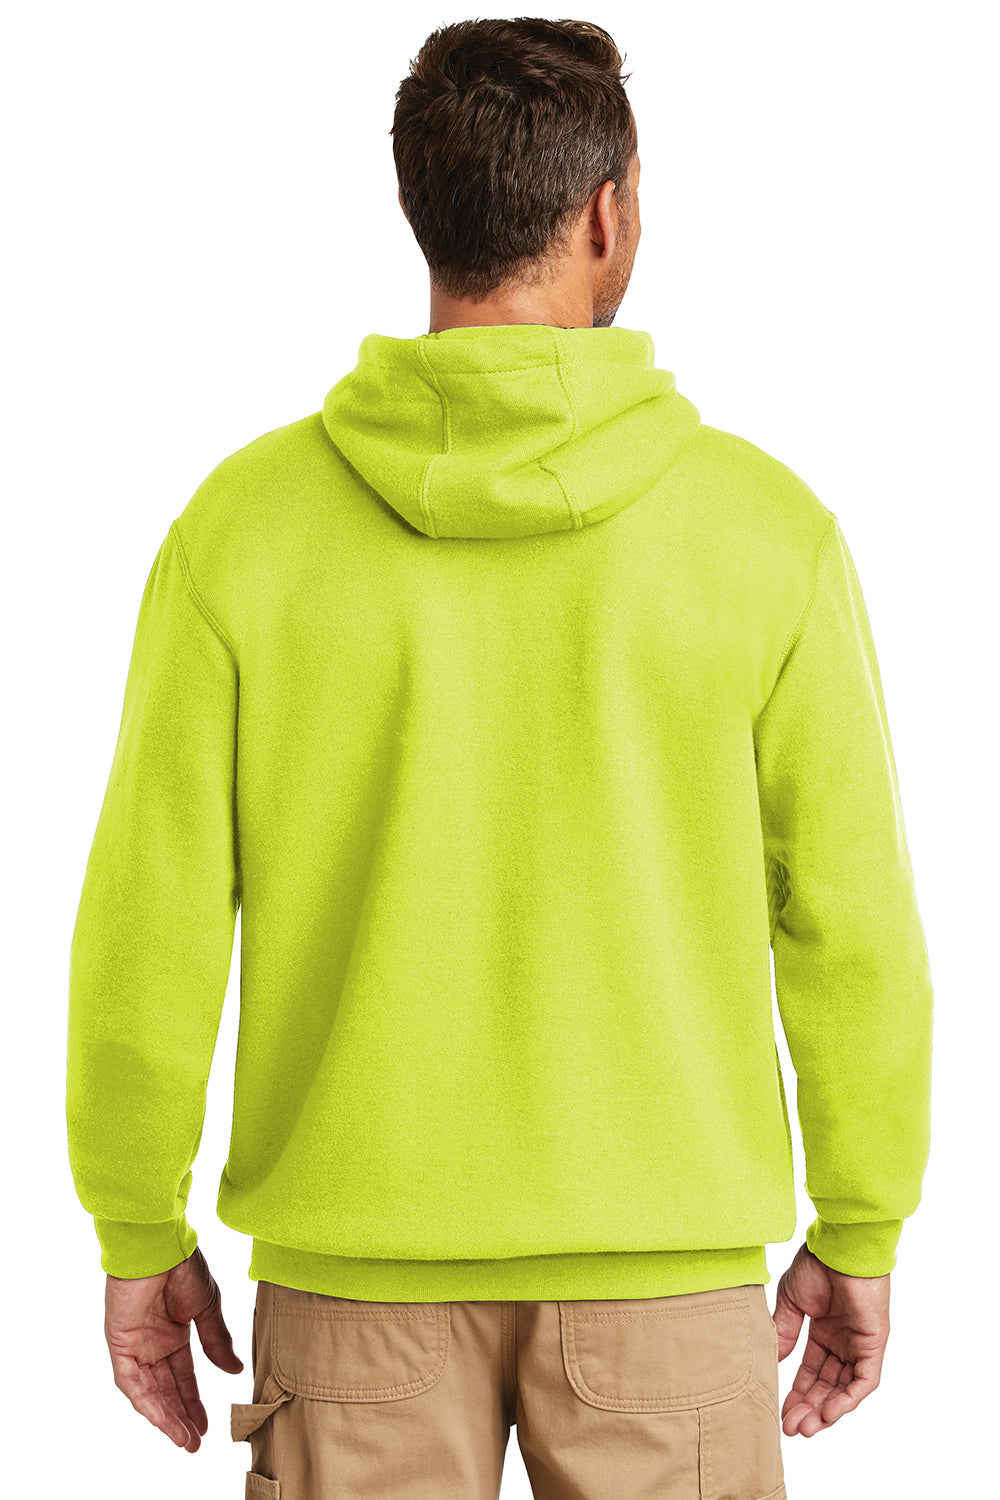 Carhartt CTK121/CTTK121 Mens Hooded Sweatshirt Hoodie Brite Lime Green Model Back